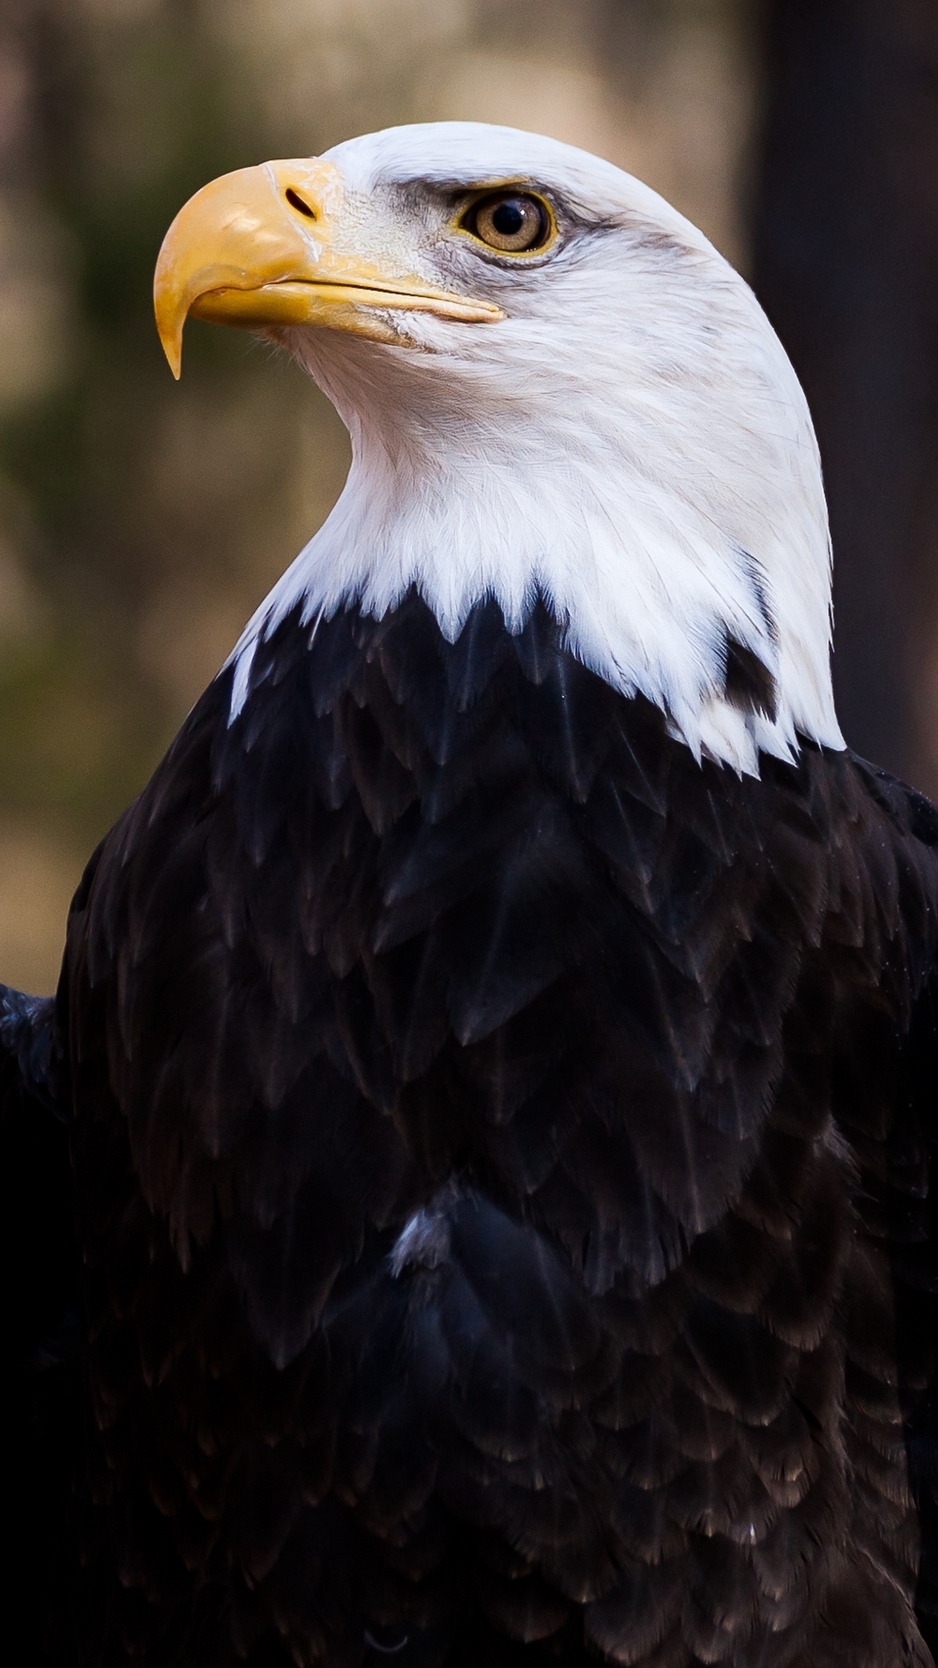 Wallpaper Bald Eagle, Eagle, Bird, Predator, Feathers, - Iphone Wallpapers  Bald Eagle - 938x1668 Wallpaper 